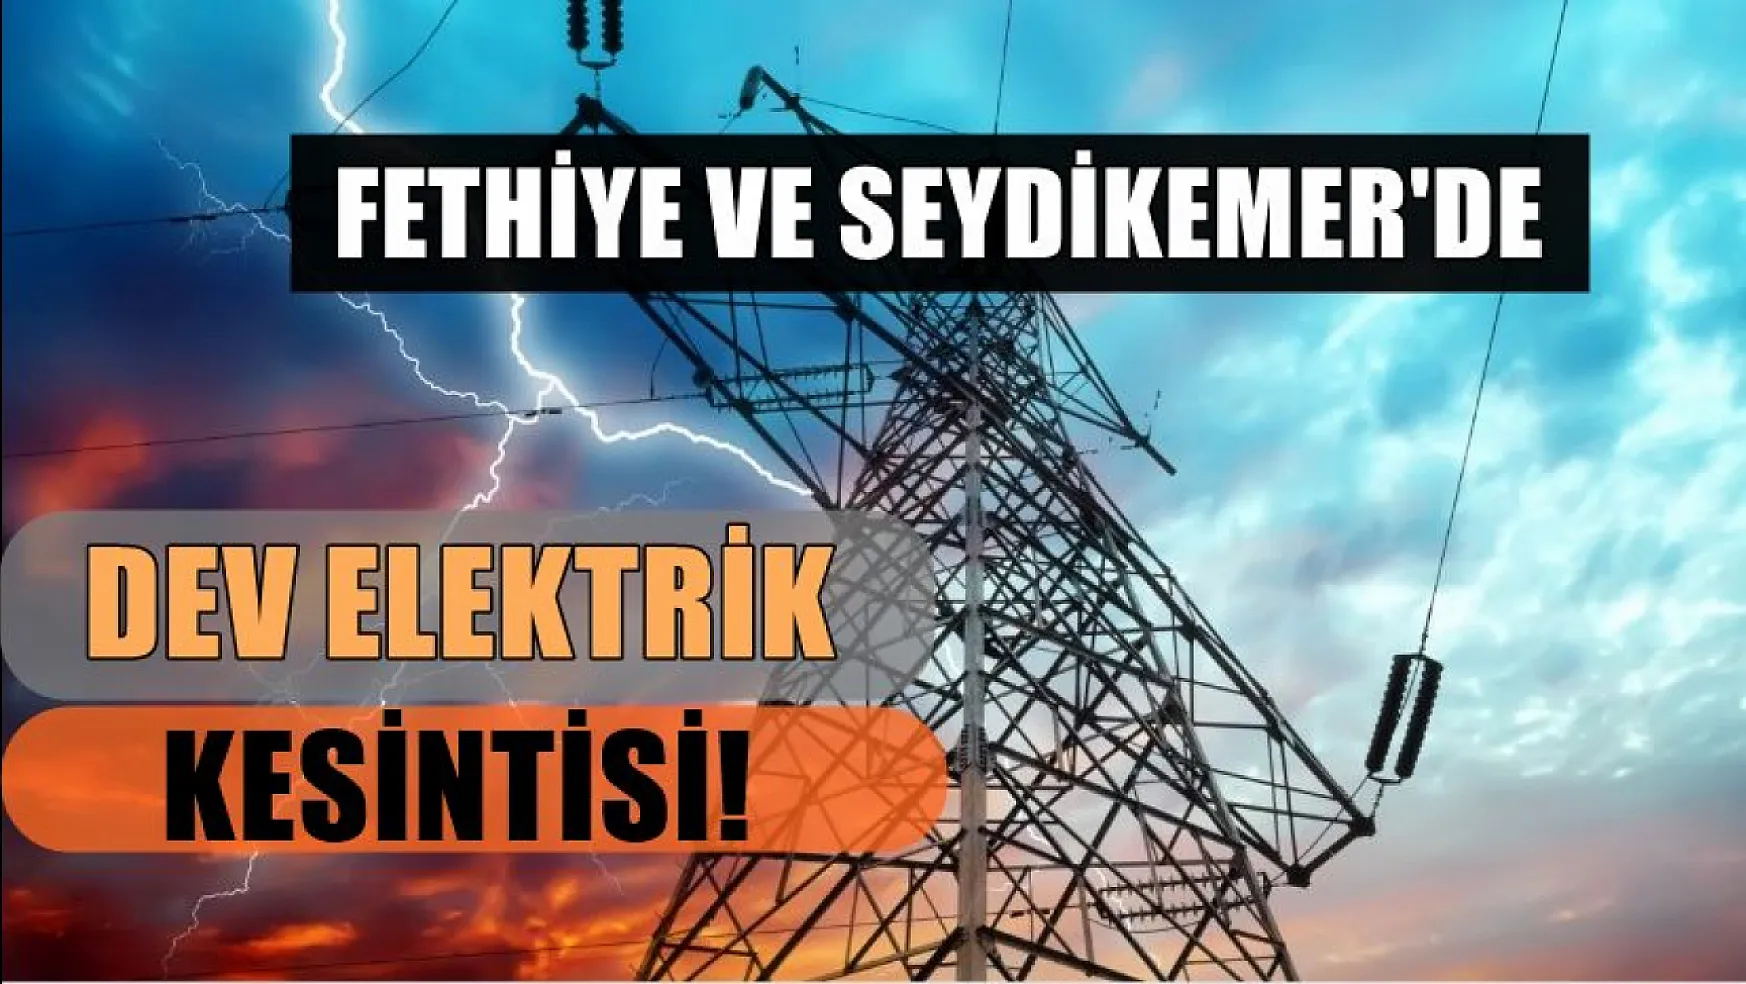 Muğla'nın 8 ilçesinde dev elektrik kesintisi! Fethiye ve Seydikemer dikkat! 19-20 Mart elektrik kesintisi detaylar..